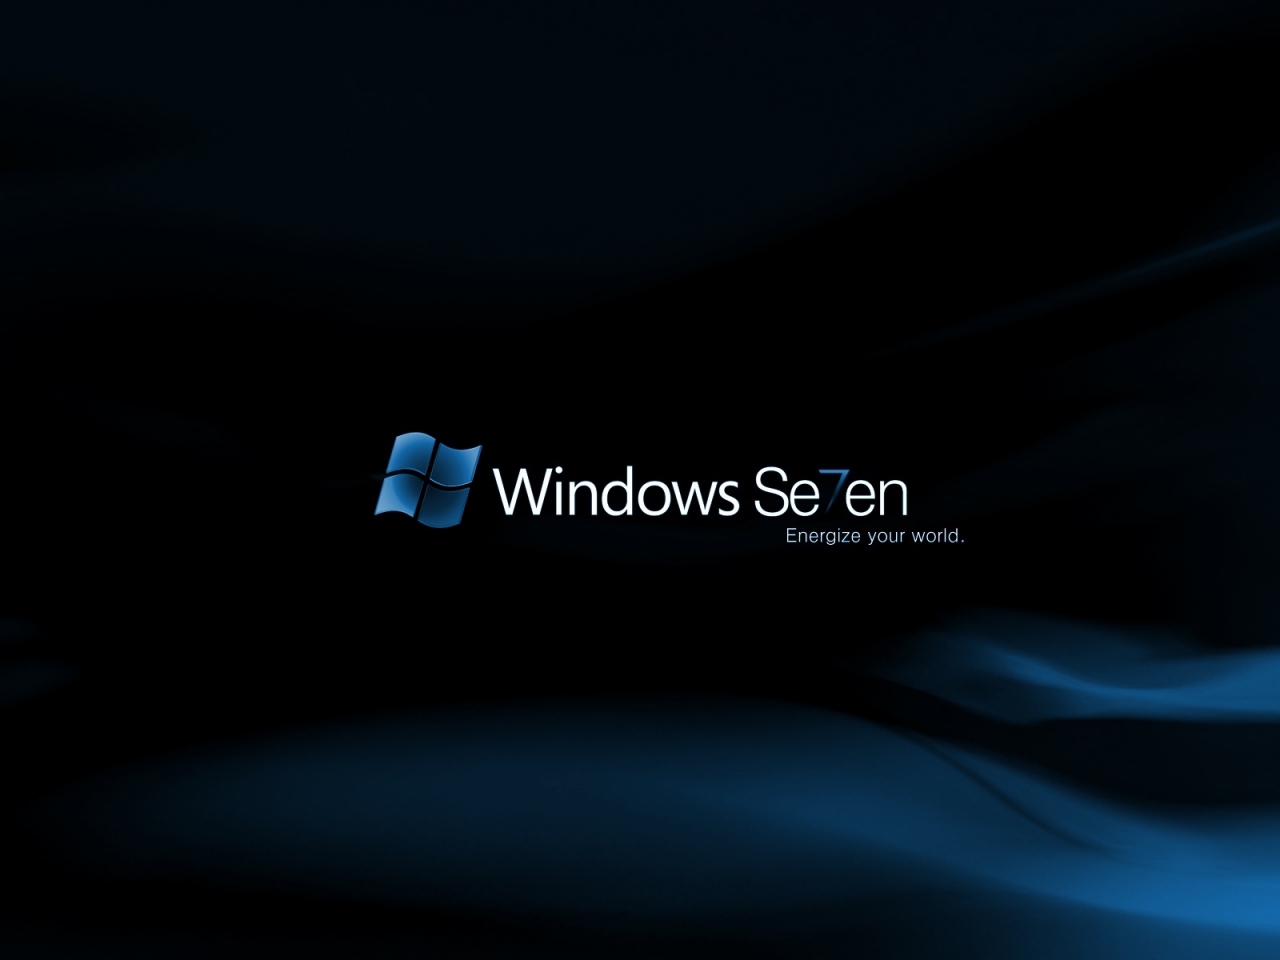 Windows Se7en Midnight for 1280 x 960 resolution